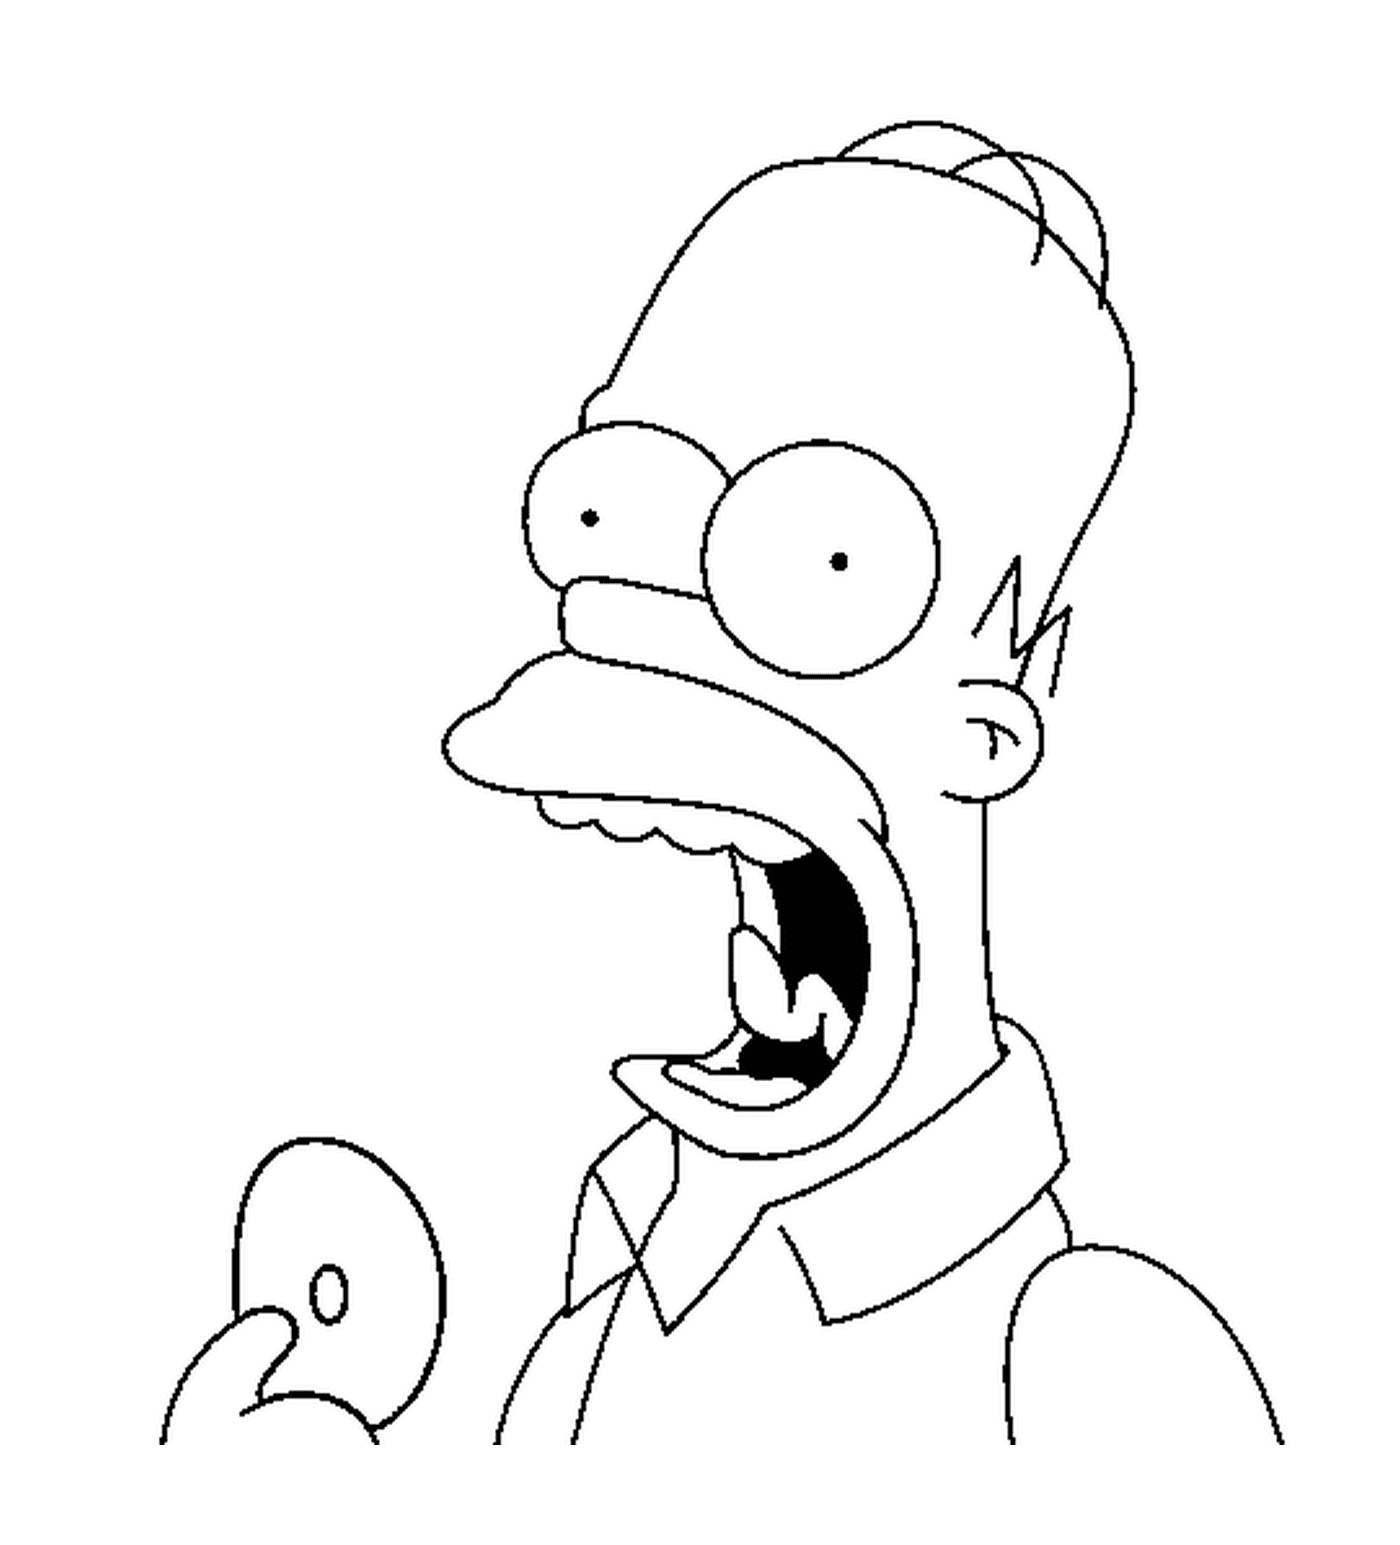  Homer geniesst einen köstlichen Donut 